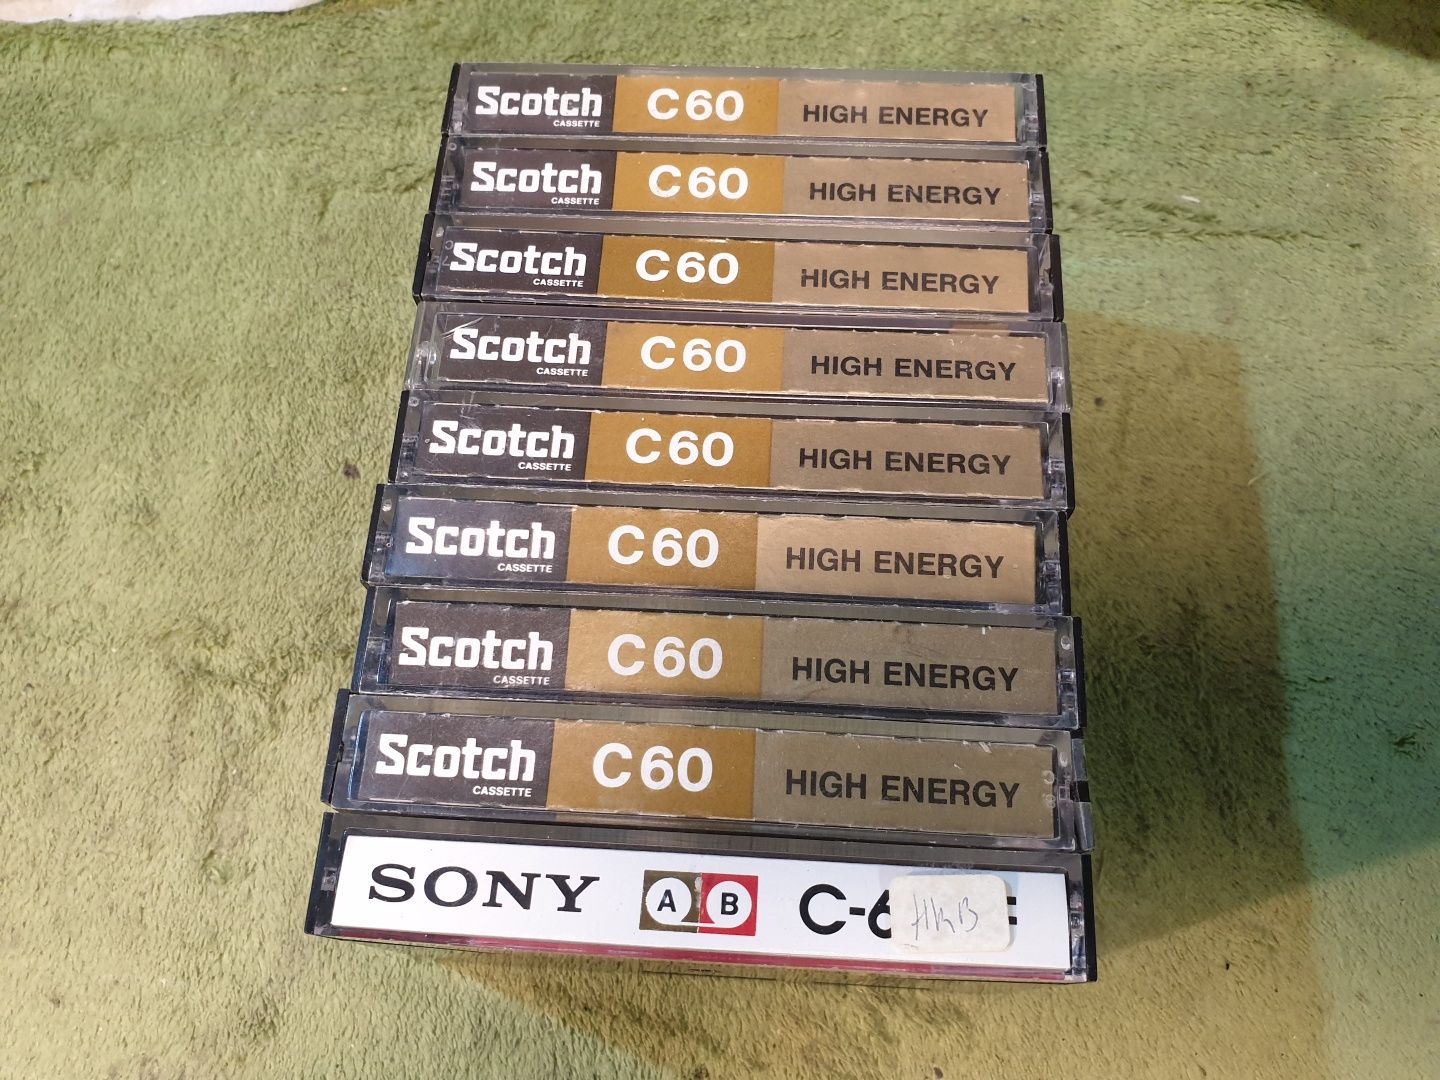 Scotch C60 8 szt. + Sony C60 HF 1 szt.